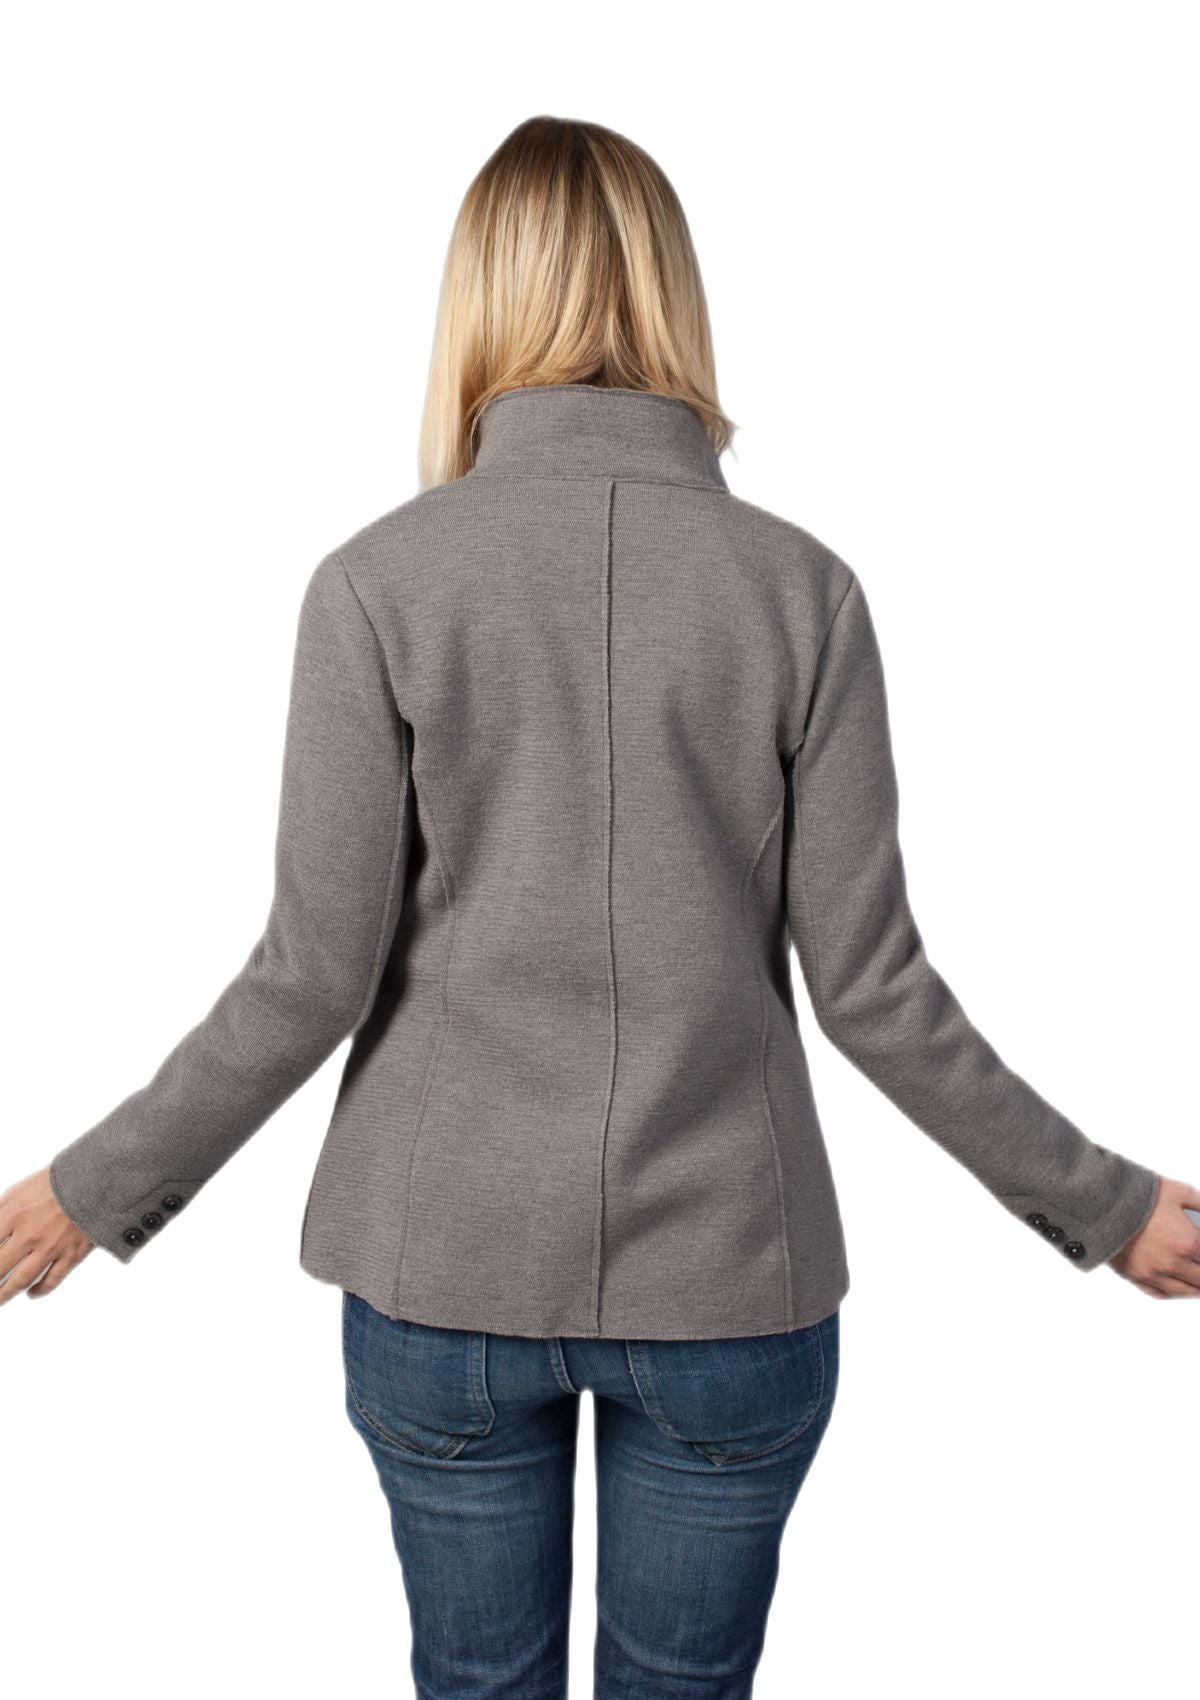 retro giacca donna in lana merino colore grigio